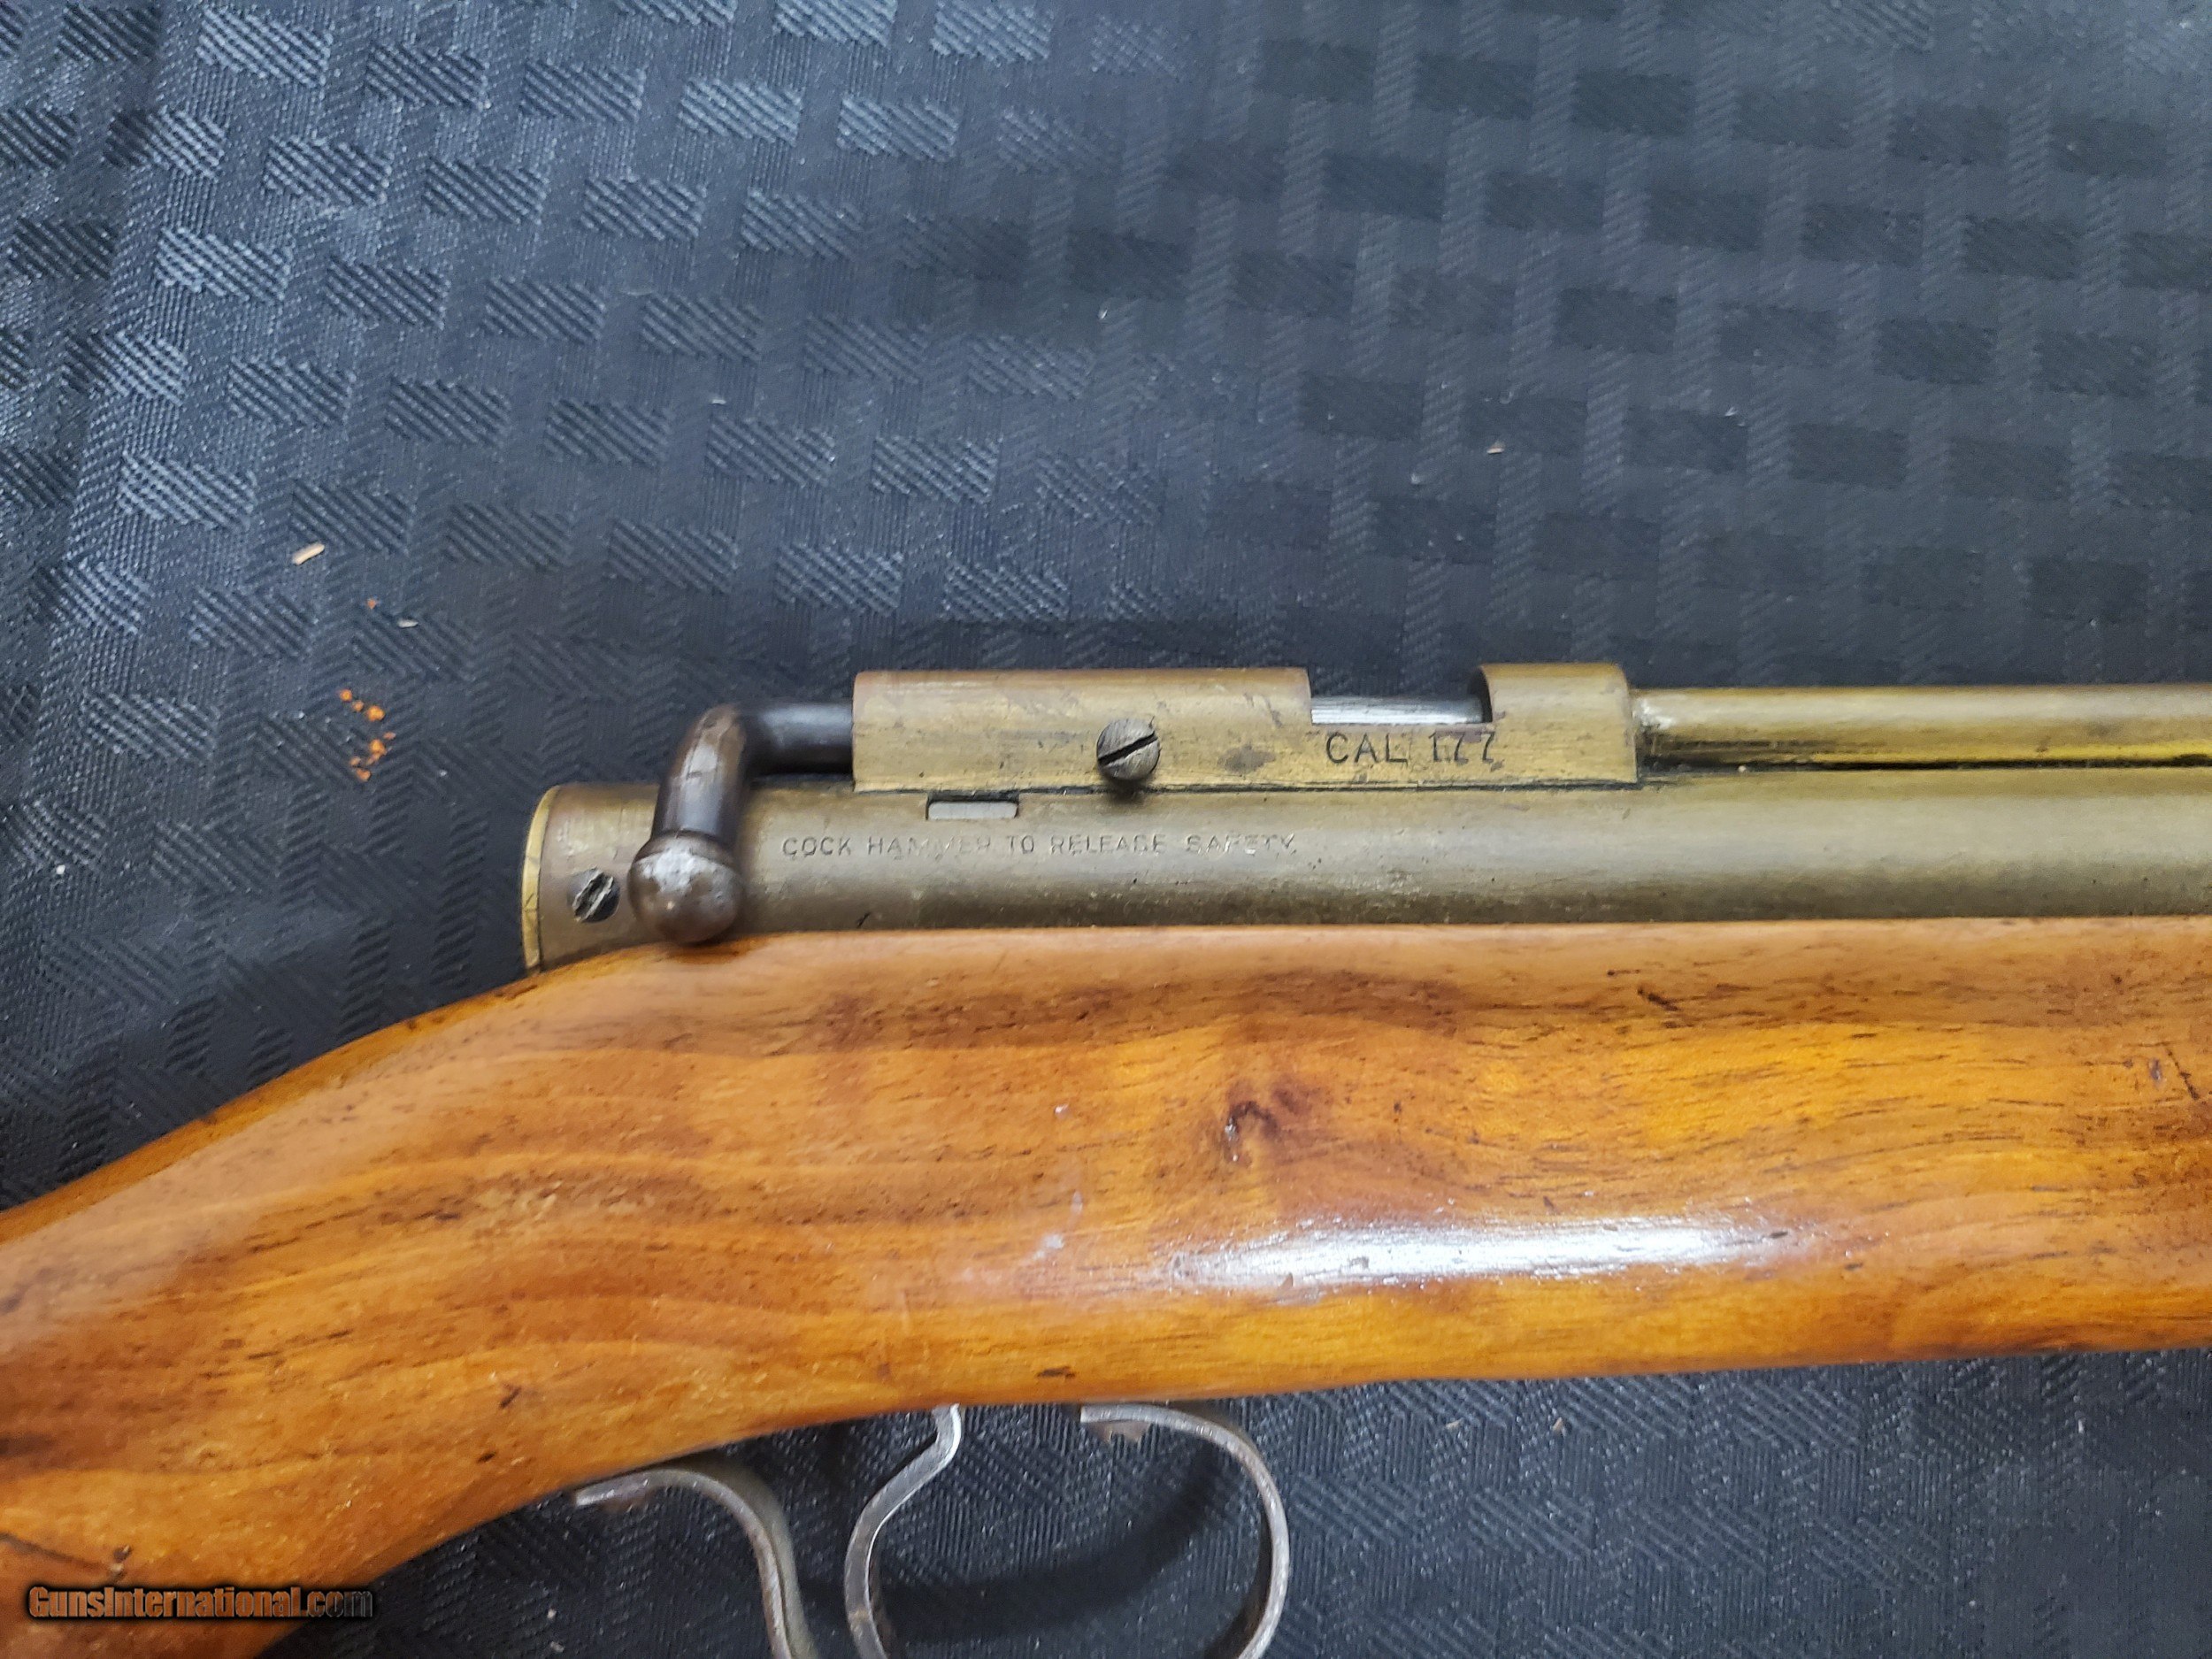 benjamin franklin air rifle parts mo h41447